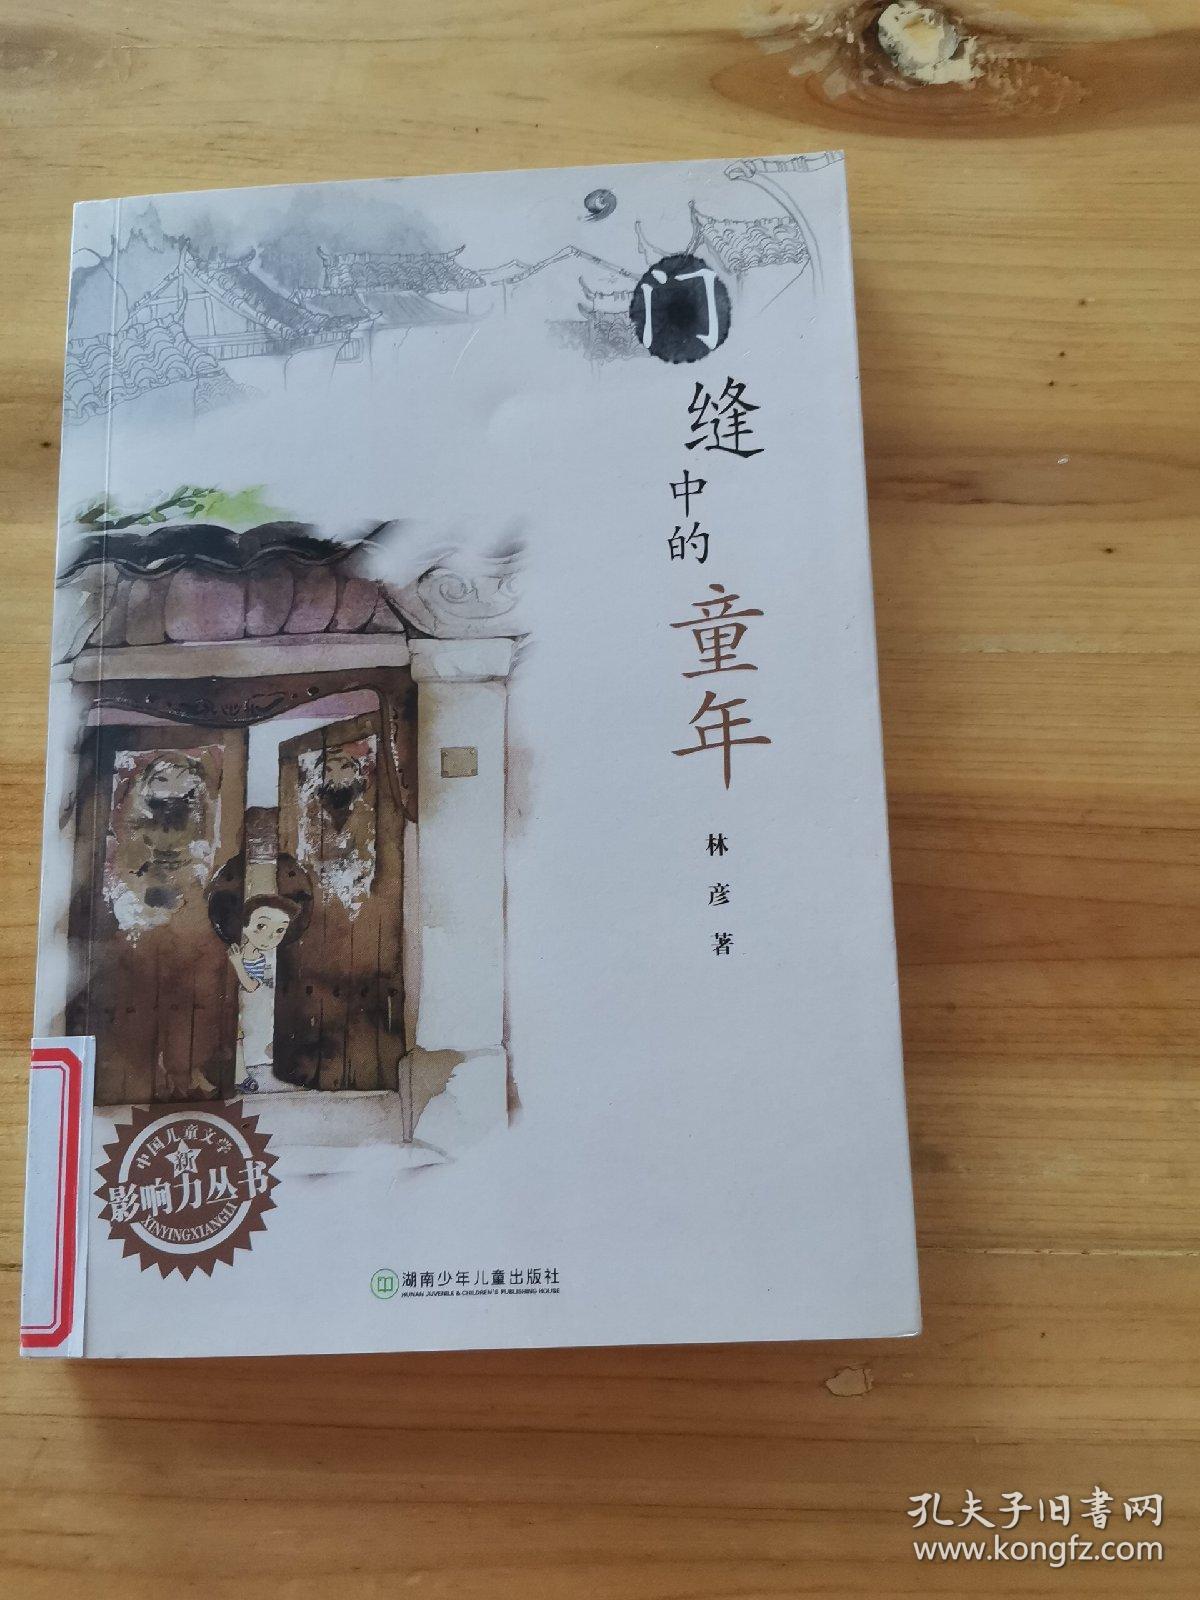 门缝中的童年：中国儿童文学影响力丛书